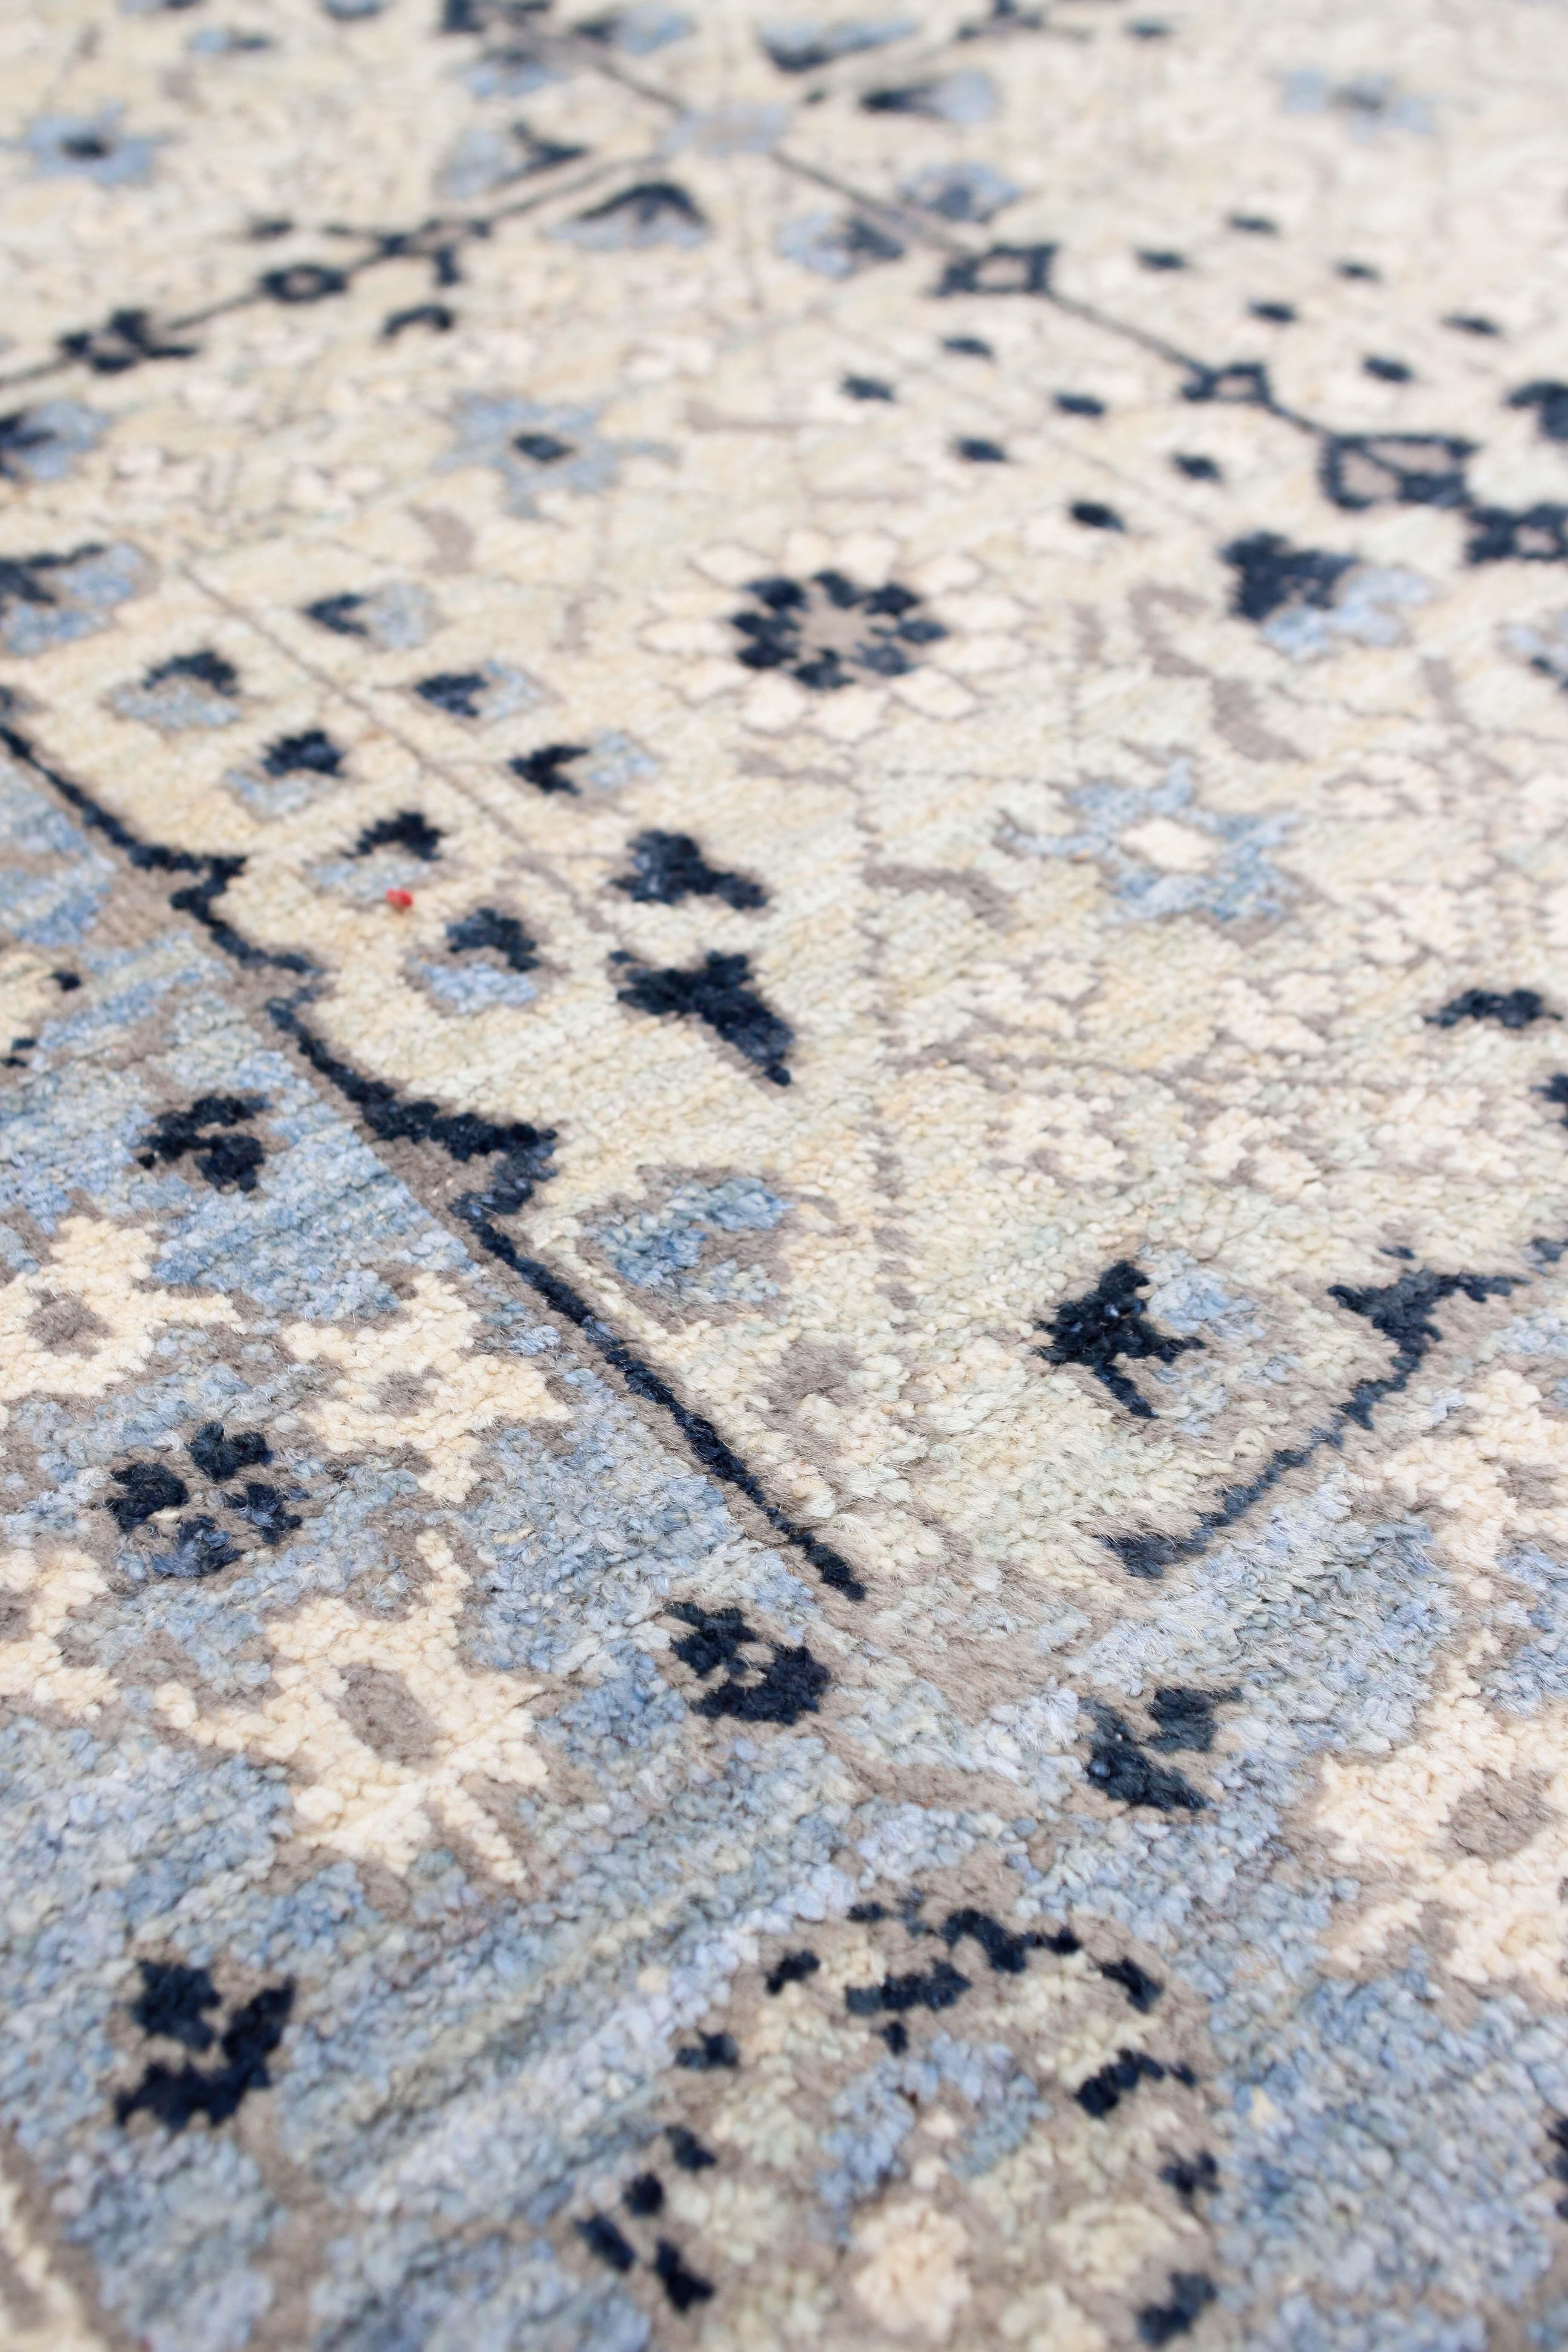 Tapis de transition bleu afghan 10x14.
Noué à la main avec de la laine filée à la main, tissé en Afghanistan.
Ce tapis magnifiquement conçu se distinguera dans n'importe quelle pièce.

Fabriqué en 100% laine.
Teinté dans la masse pour des